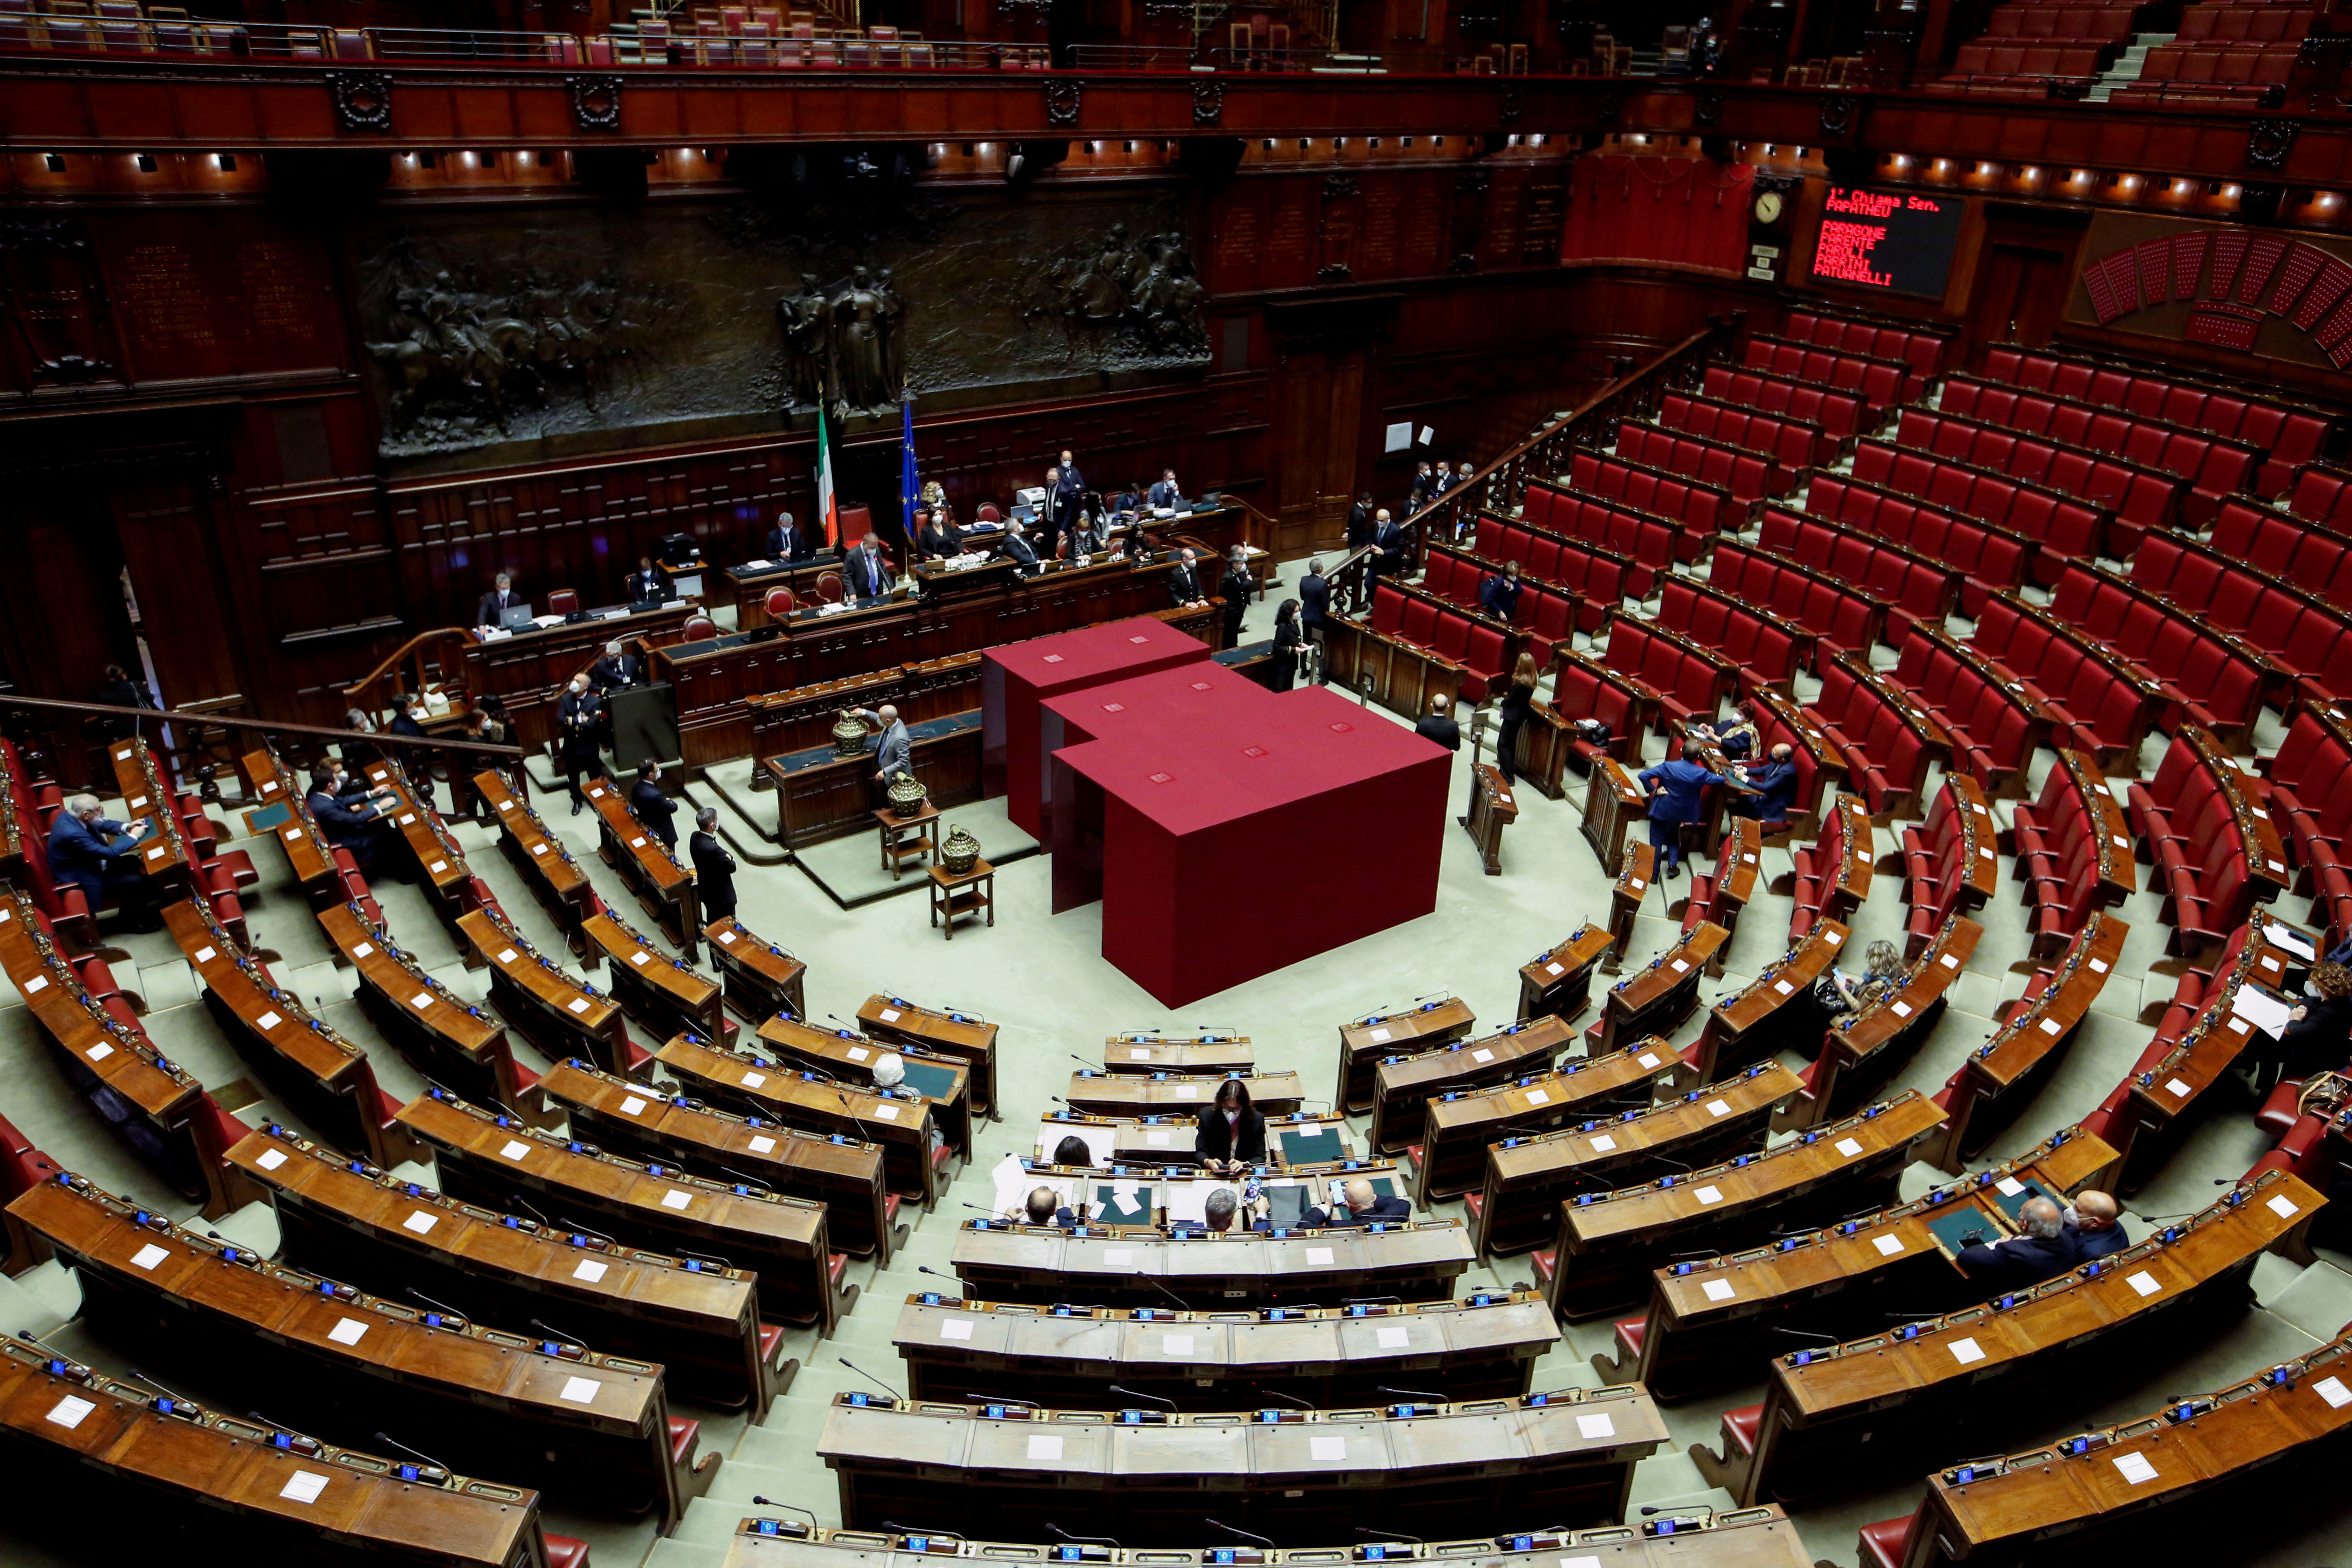 Vista general de la Cámara de Diputados mientras continúa la votación para elegir al nuevo presidente del país, en Roma, Italia, el 29 de enero de 2022. REUTERS/Remo Casilli/Pool